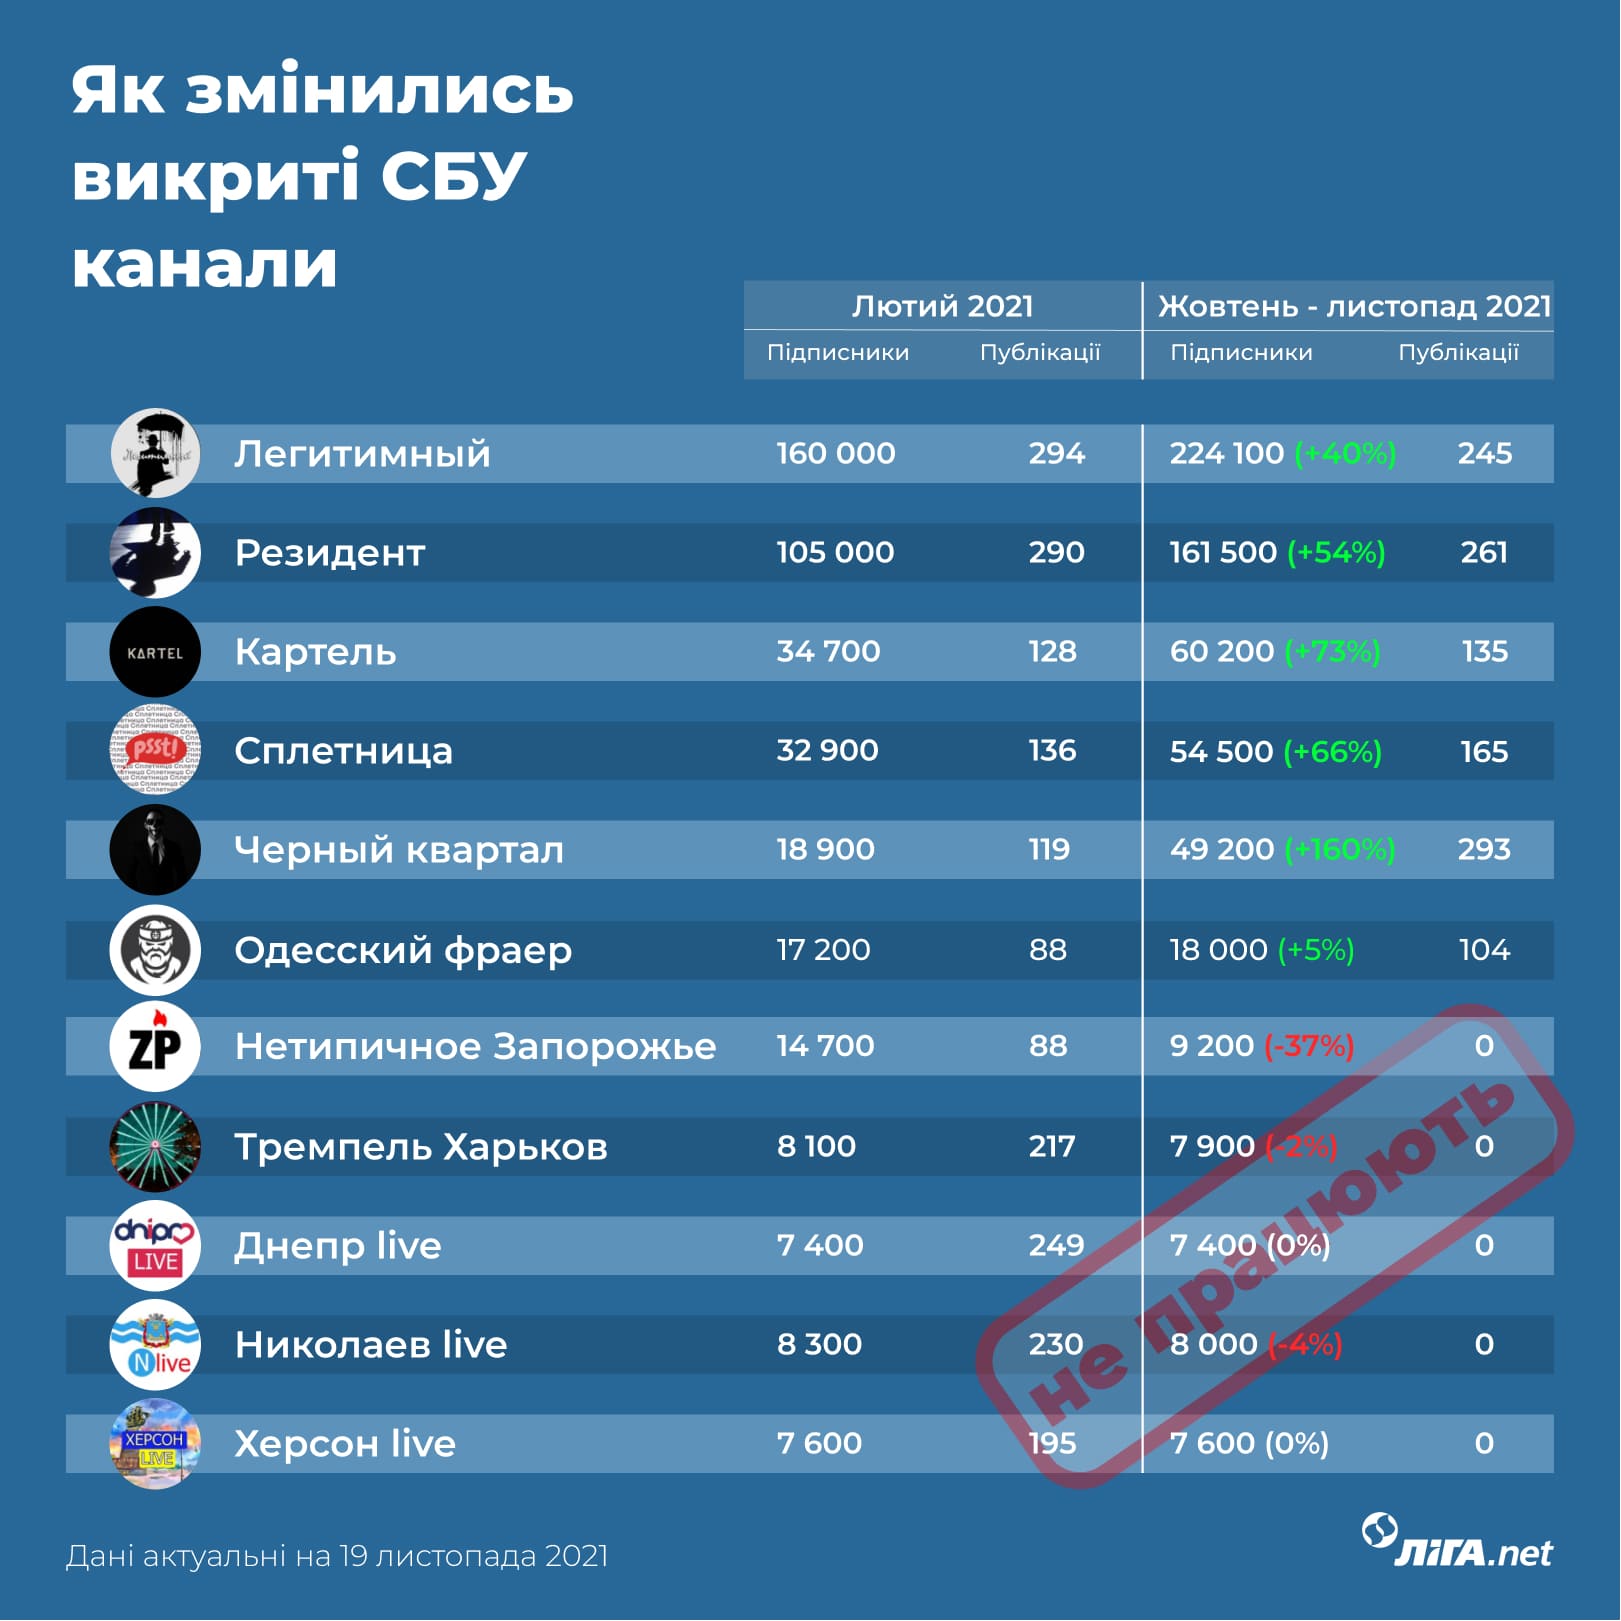 Імперія ГРУ. Як влаштована та як впливає на Україну мережа Telegram-каналів, розкритих СБУ